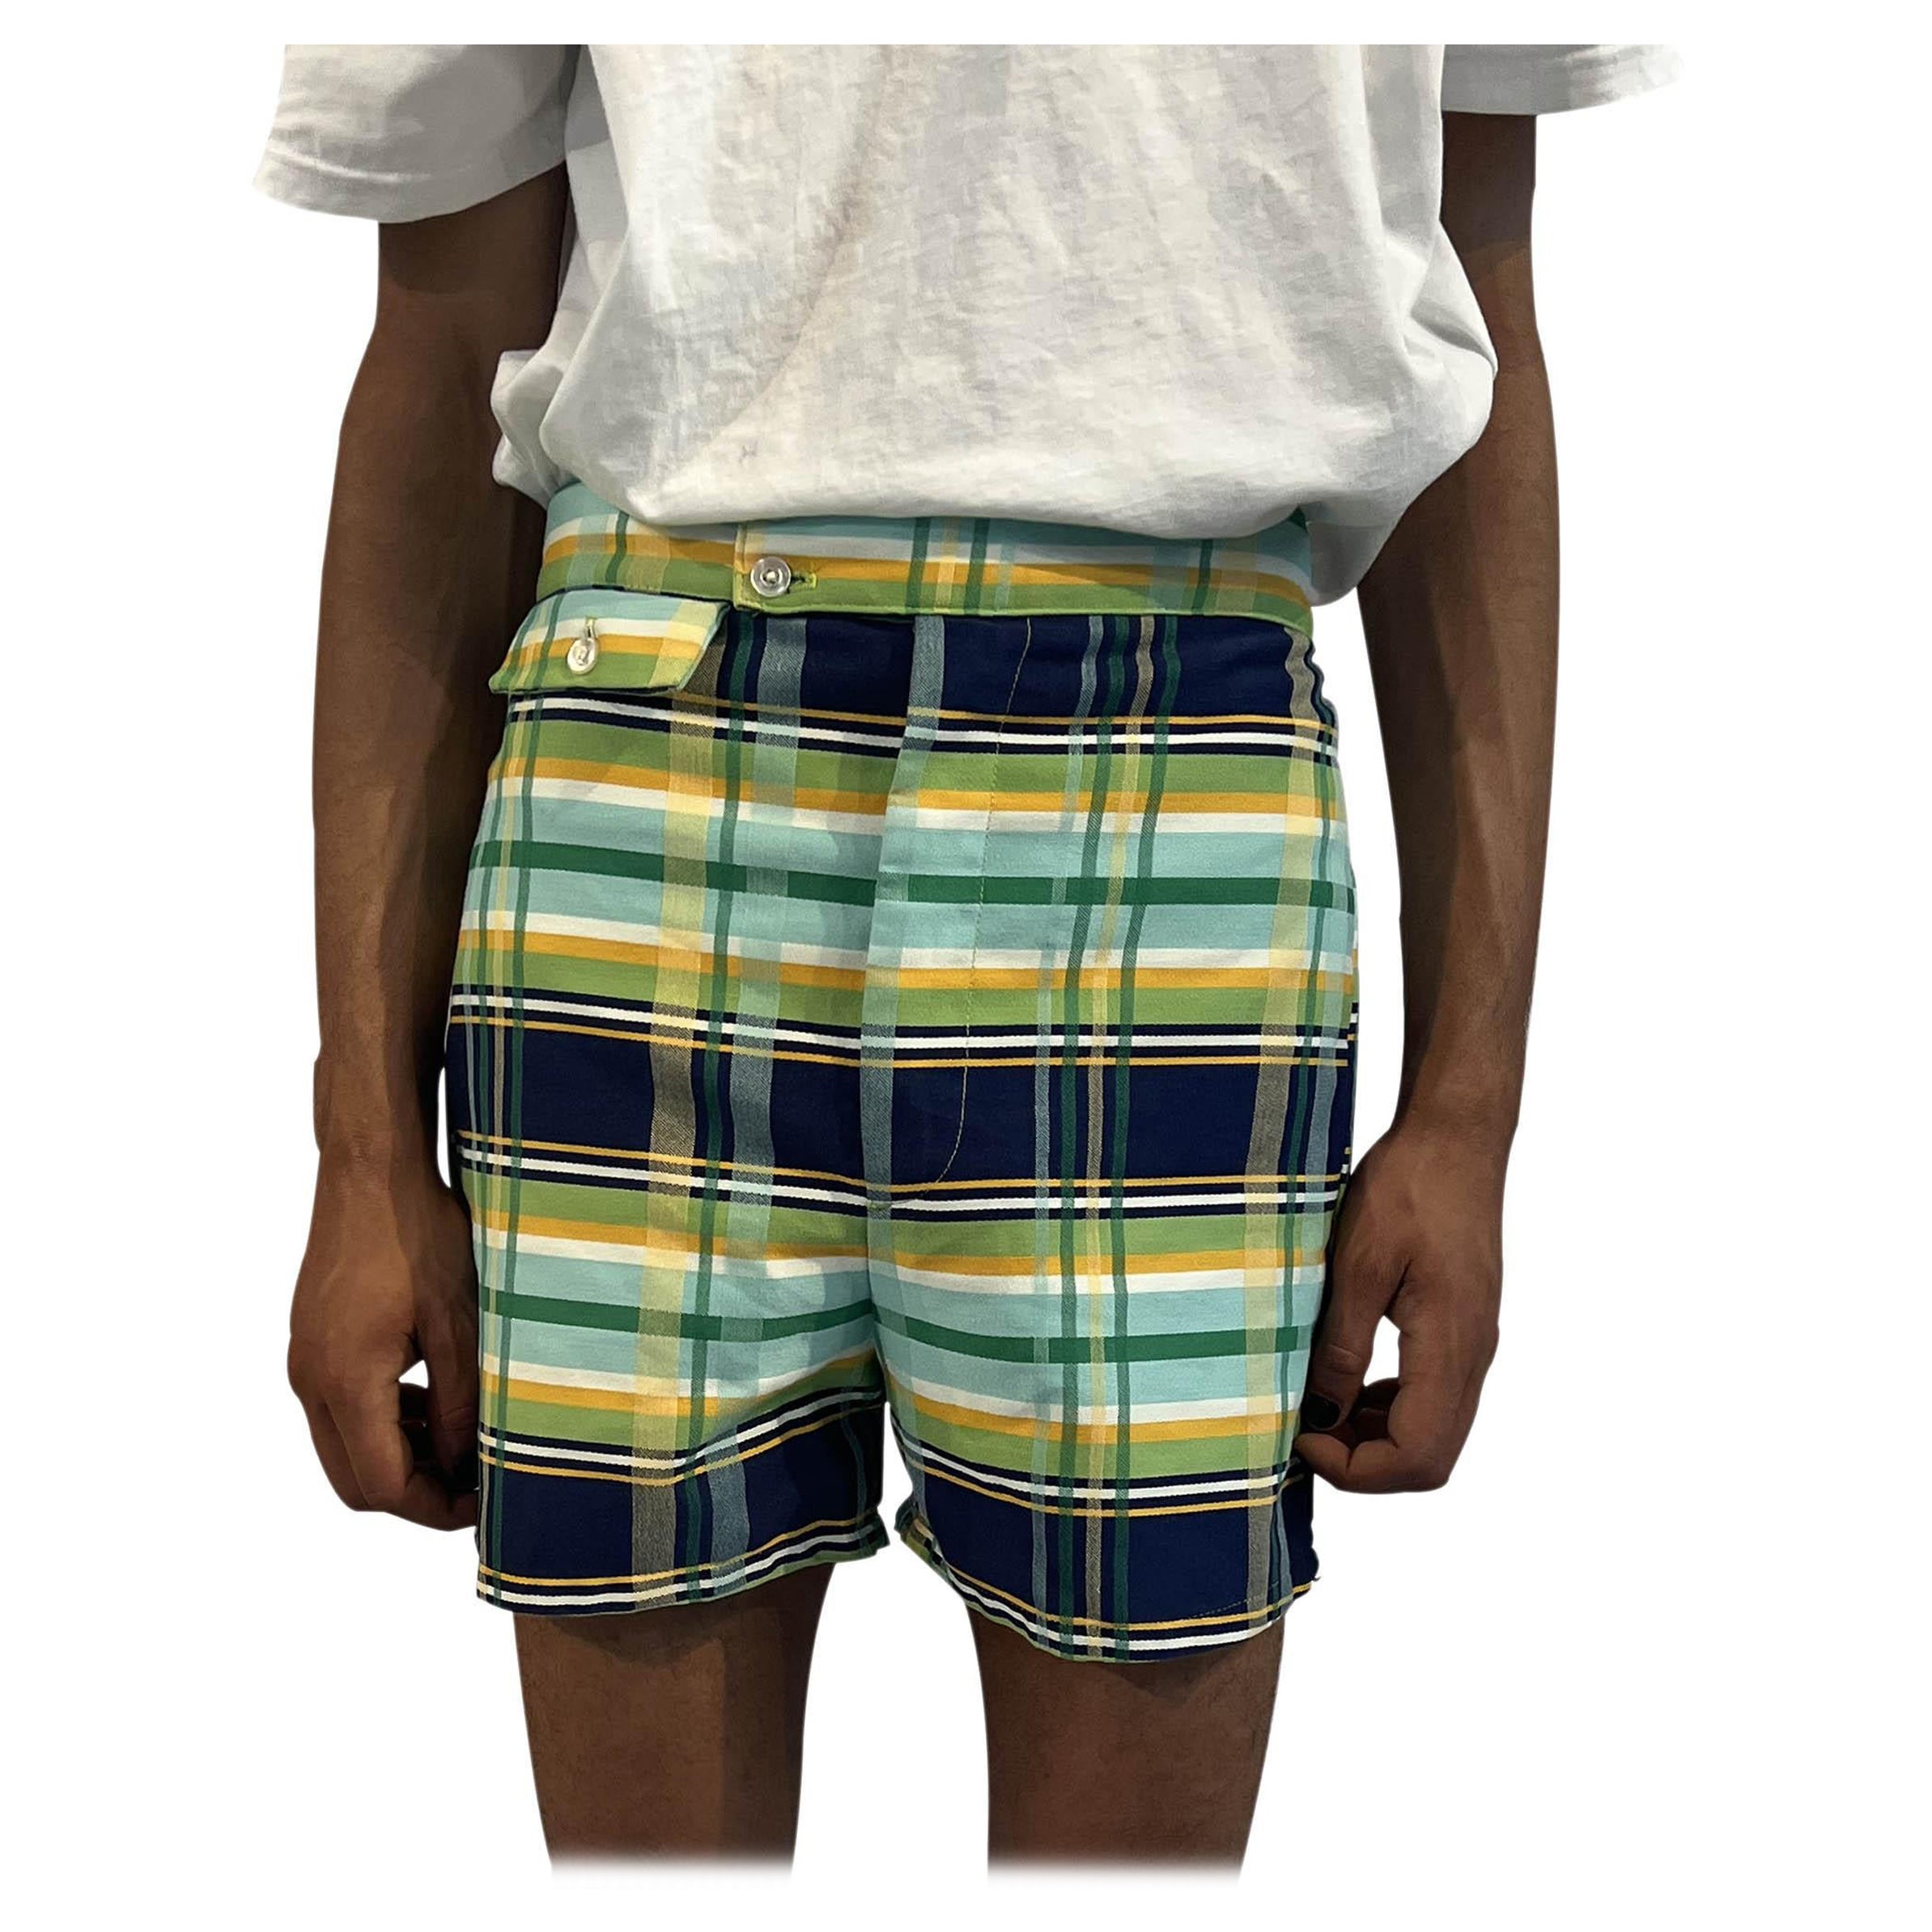 Louis Vuitton Men's XL Monogram Logo Swim Trunk Shorts Bathing Suit Lmlv1028